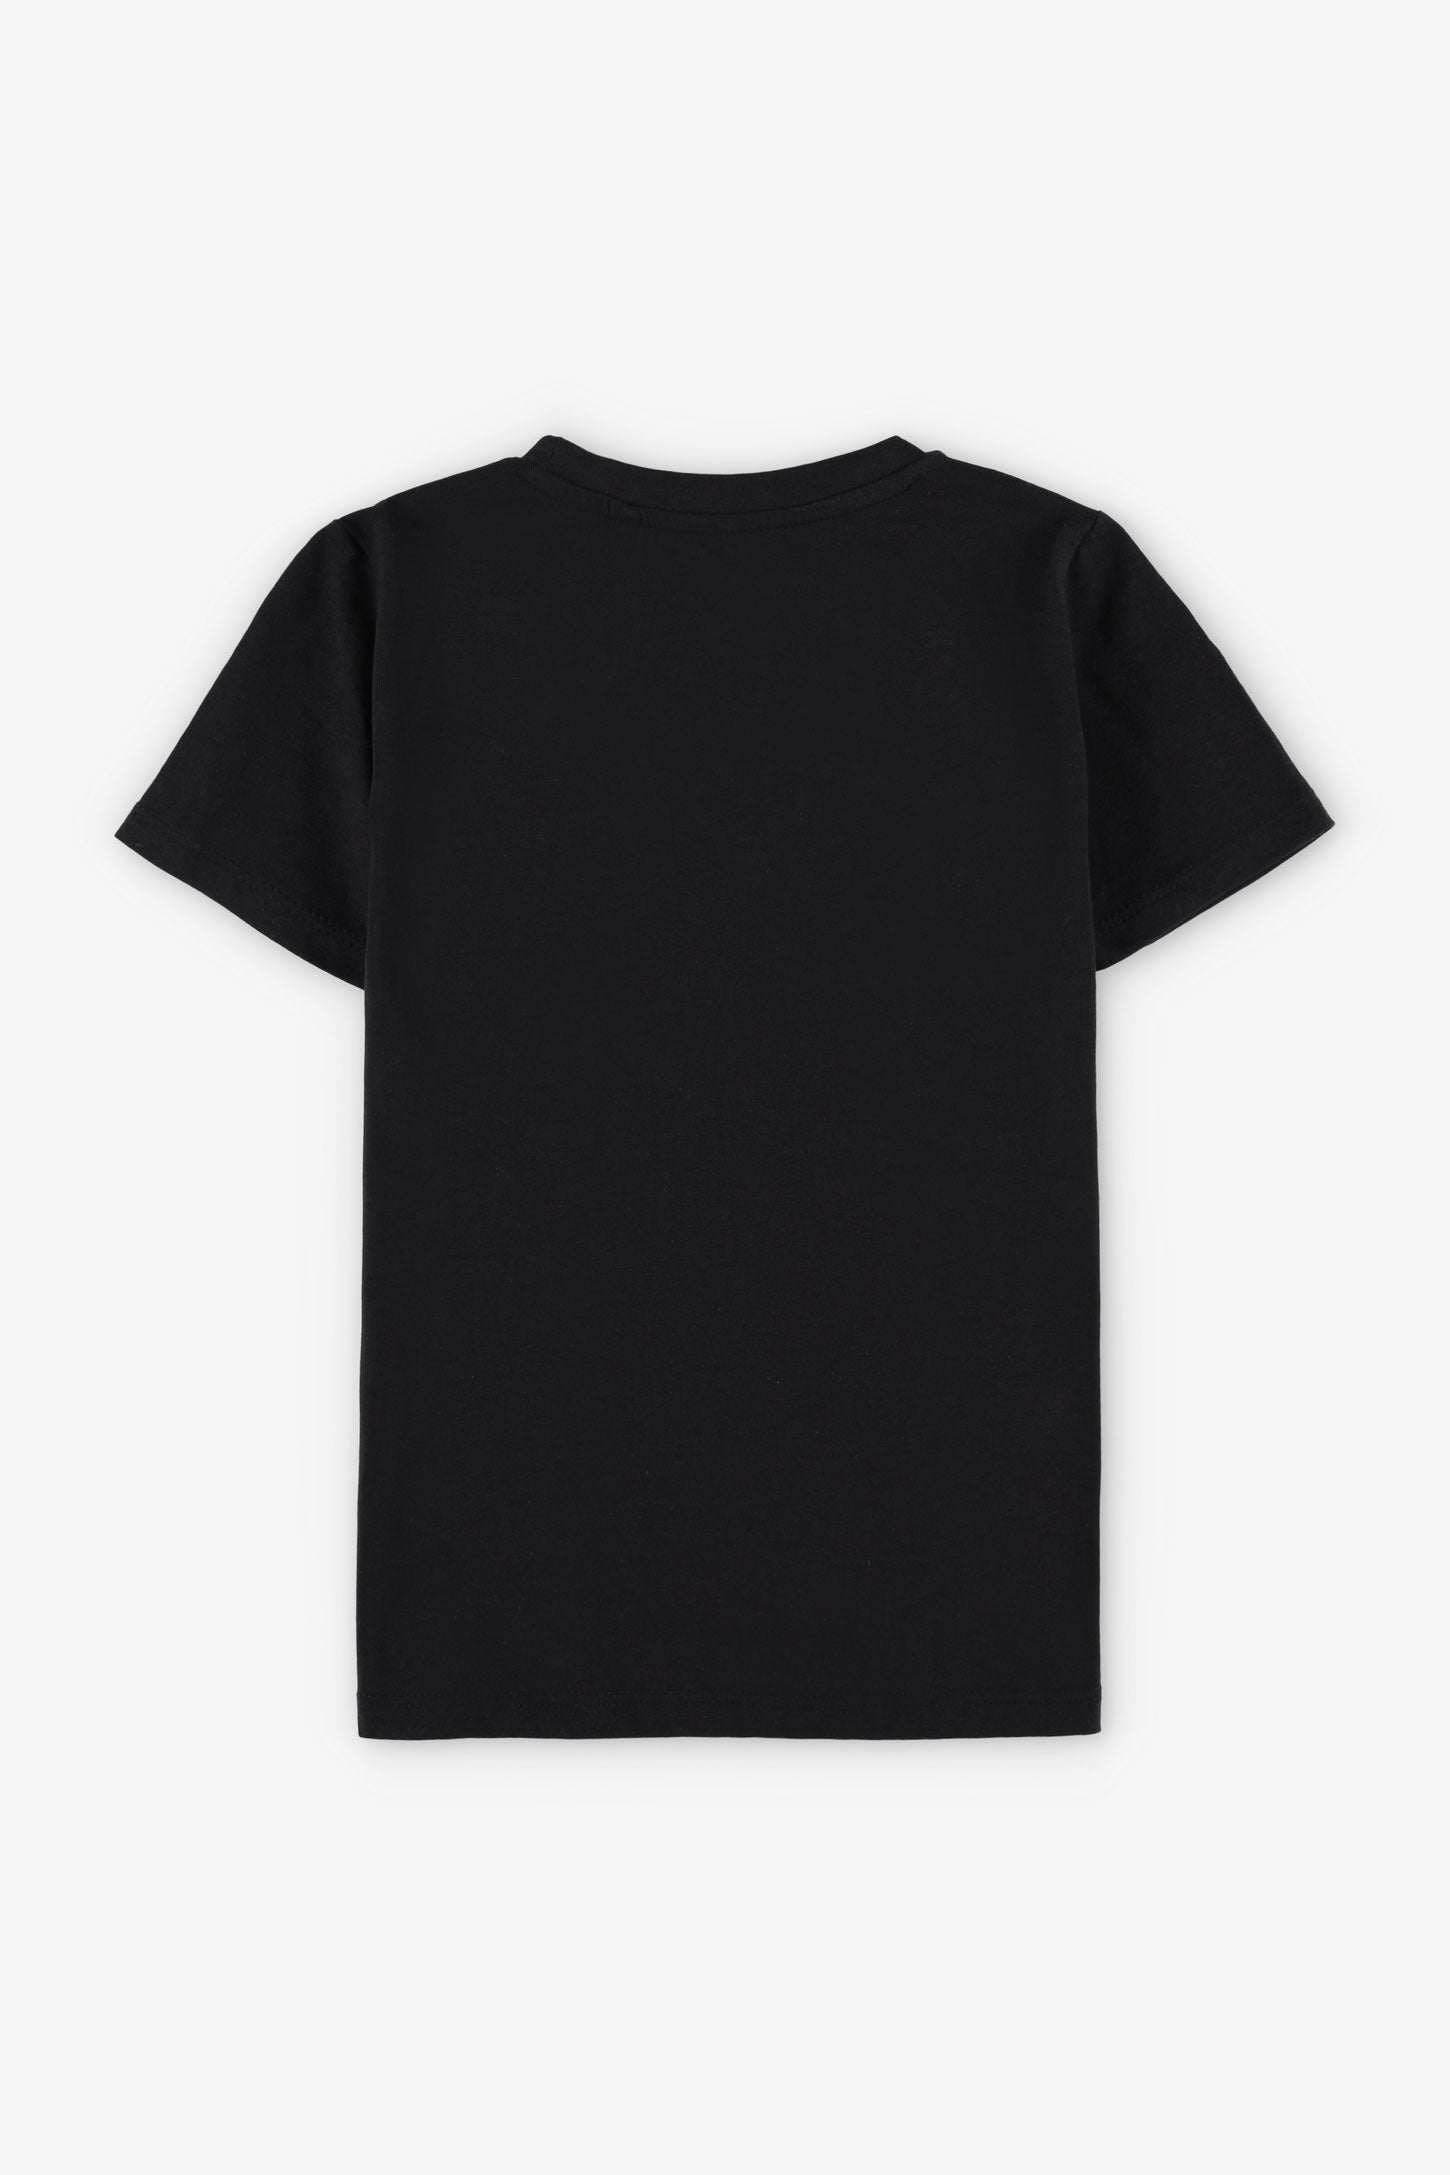 T-shirt imprimé en coton, 2/20$ - Enfant garçon && NOIR